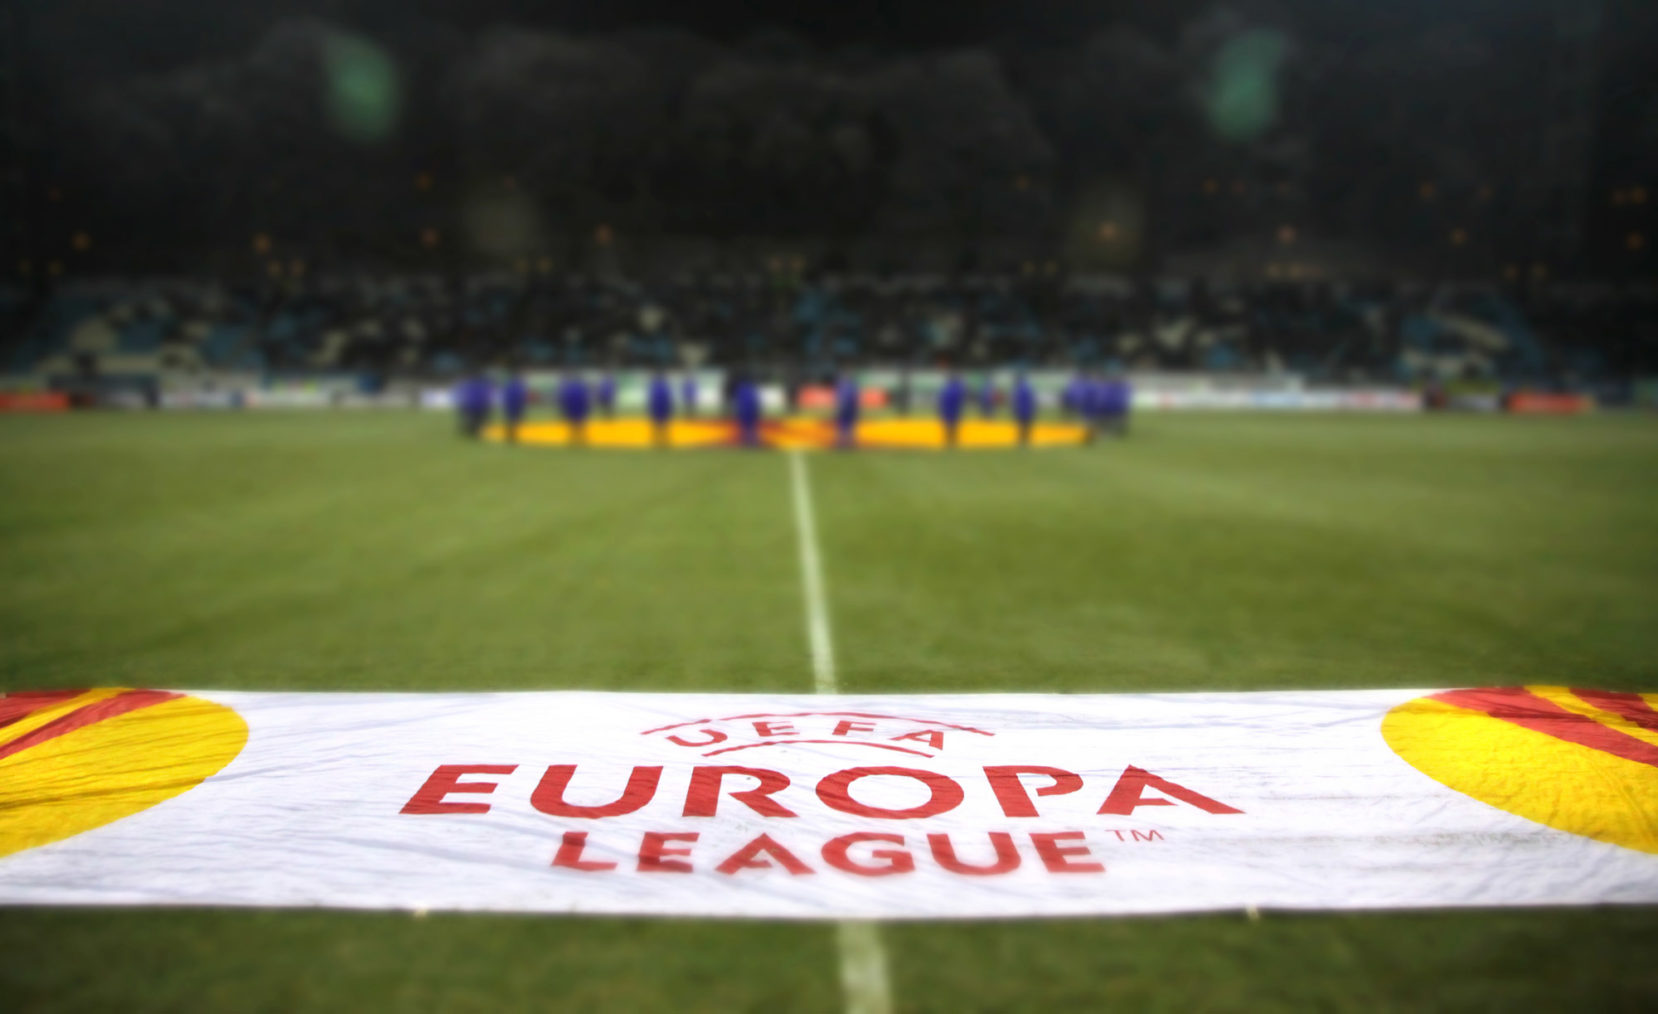 UEFA-banner på en fotballbane med tribune uskarpt i bakgrunnen.